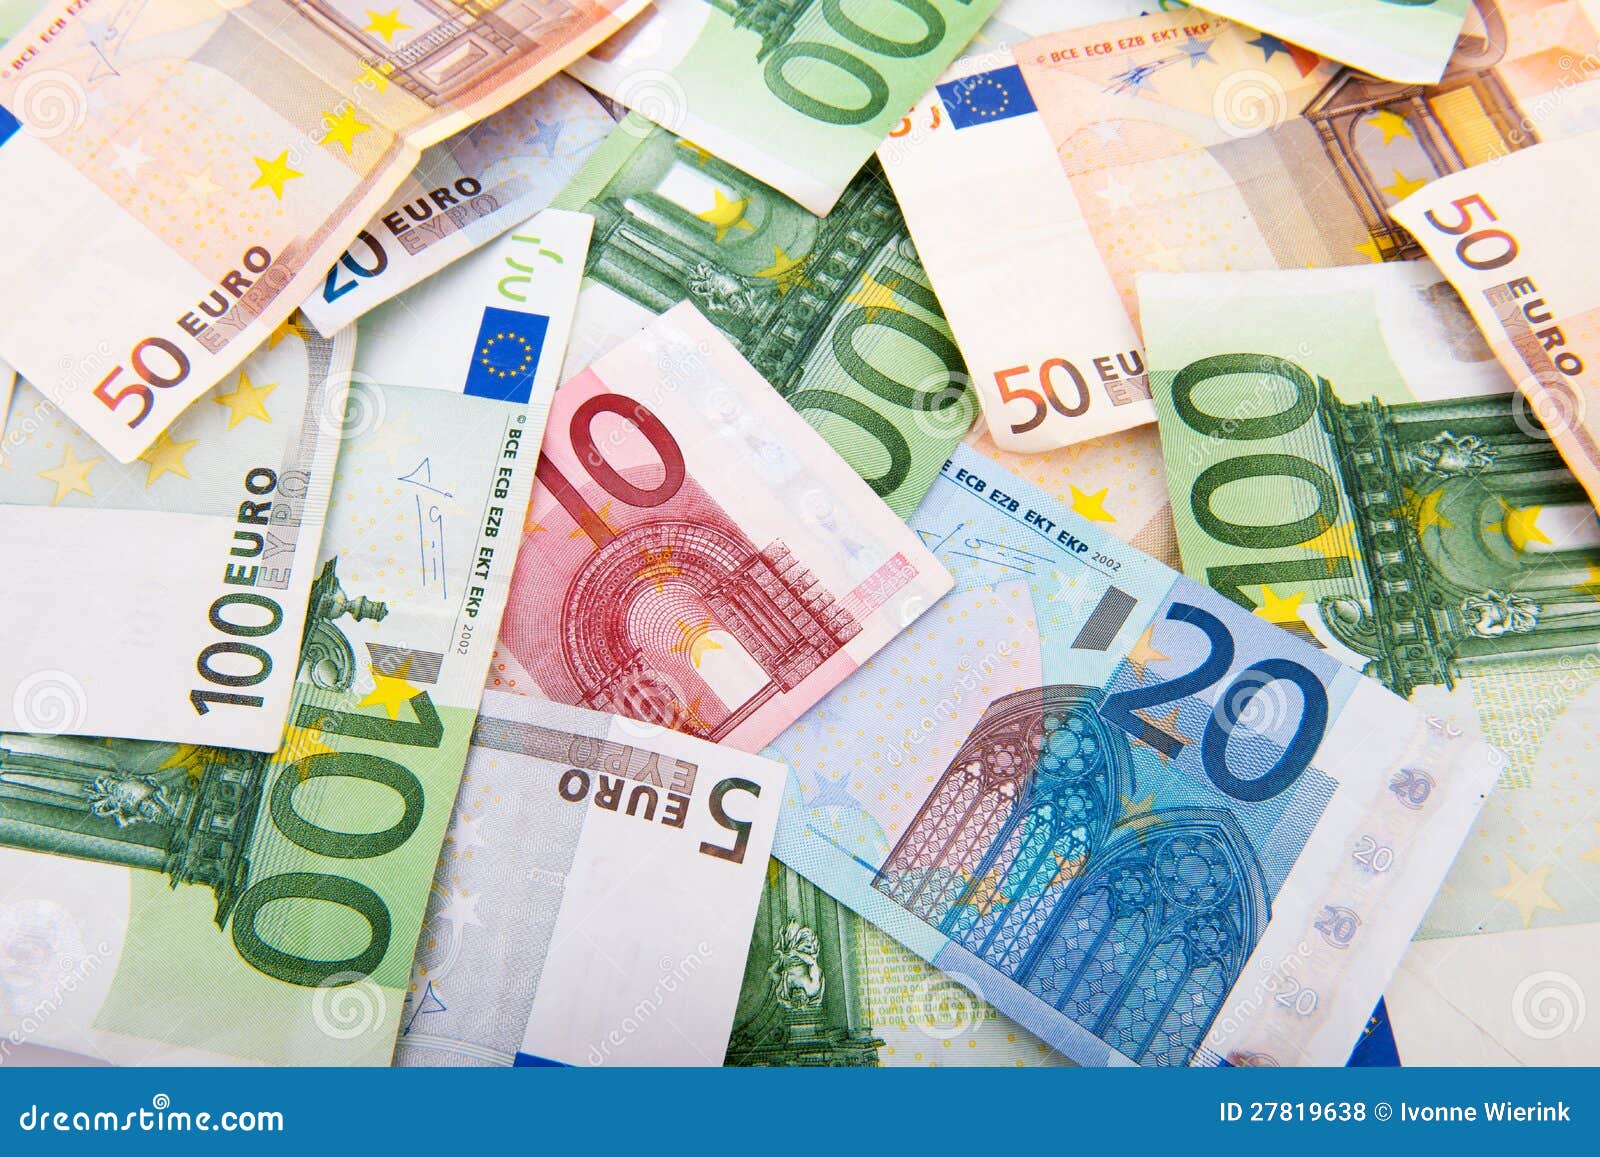 clipart monnaie euro - photo #43